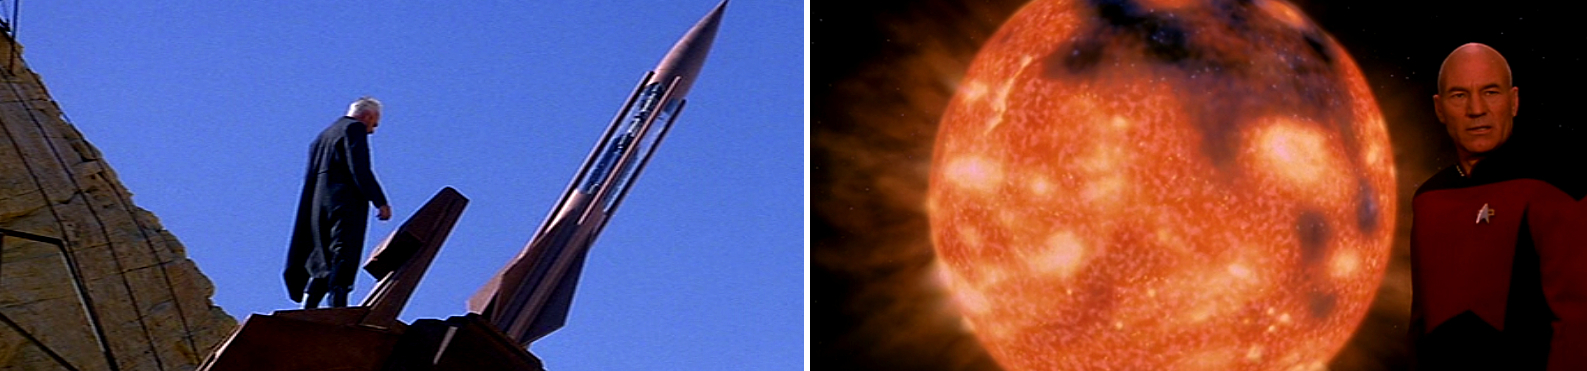 Dr. Soran löst in "Star Trek: Generations" mithilfe eines Trilithium-Torpedos eine Supernova im Armagosa-System aus (Szenenfoto: Paramount Pictures).